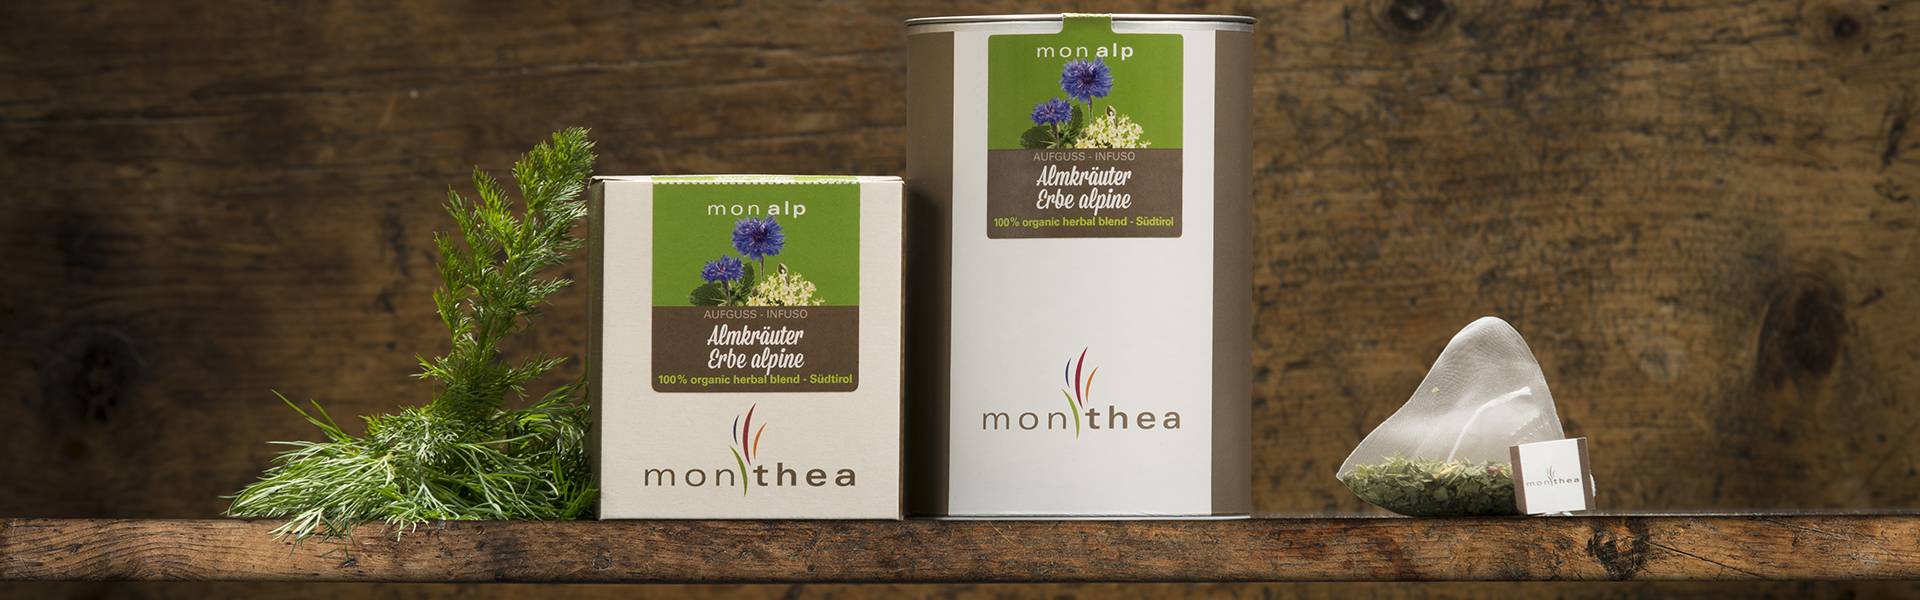 Organic alpine herbs tea monalp